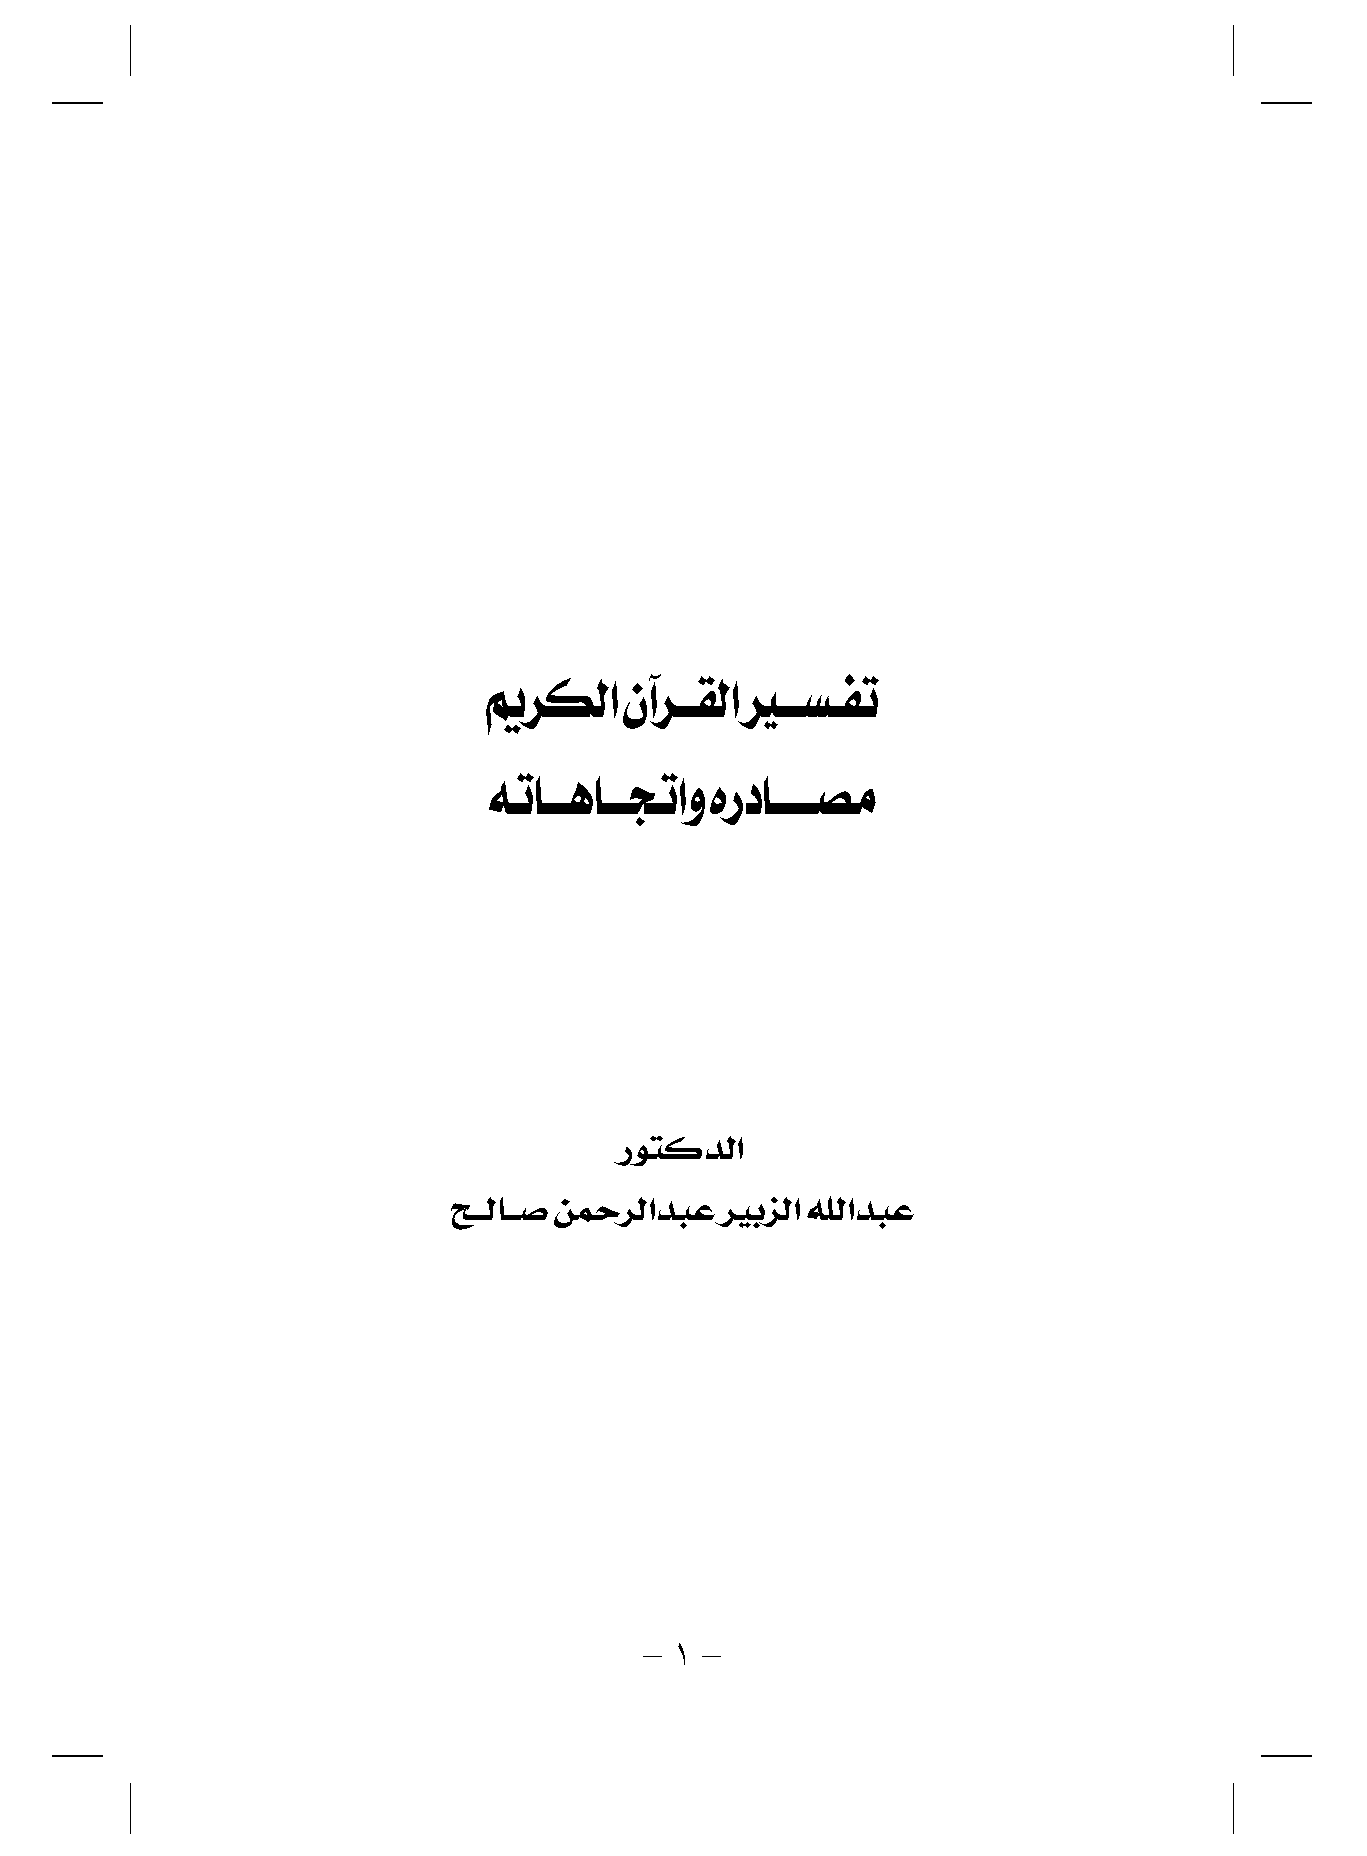 تحميل كتاب تفسير القرآن الكريم مصادره واتجاهاته لـِ: الدكتور عبد الله الزبير عبد الرحمن صالح